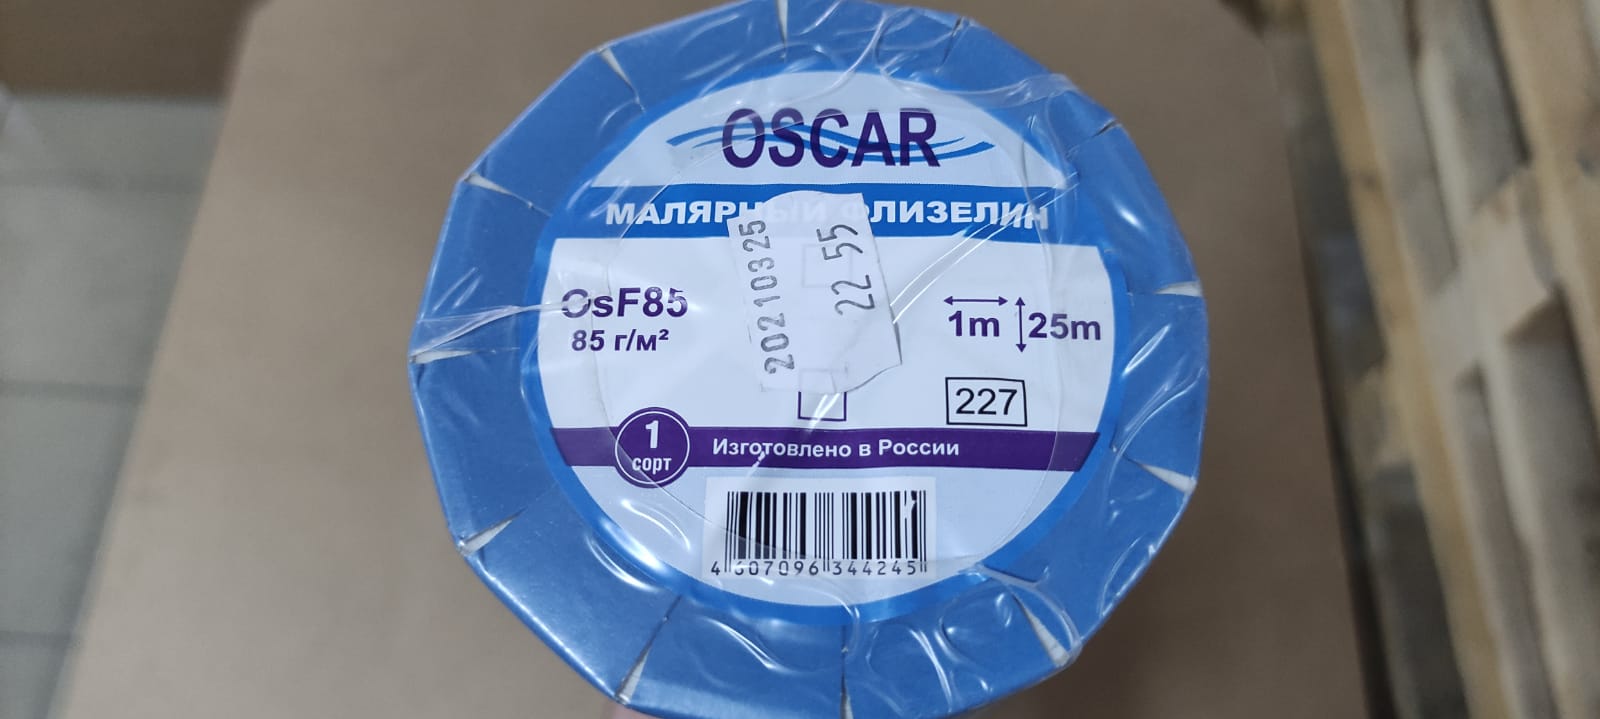 Малярный флизелин OsF85 Oscar Fliz 1*25 м